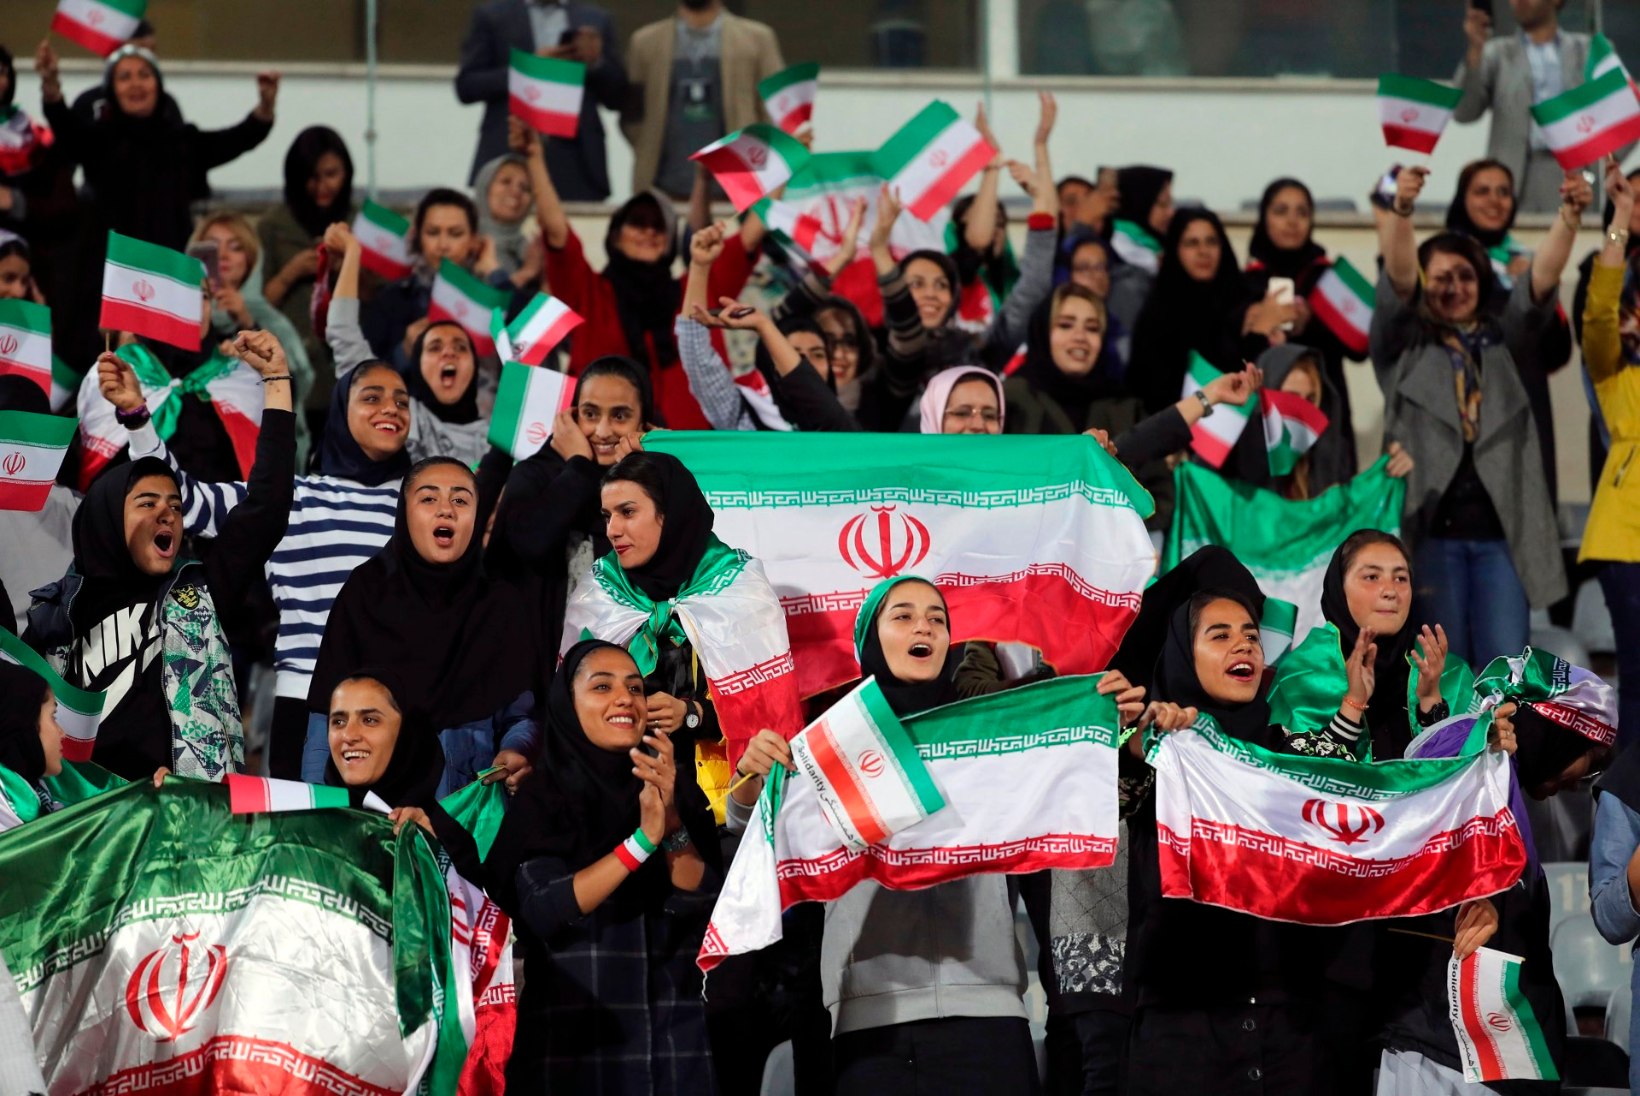 37aastase vahe järel staadionile pääsenud Iraani naised põhjustasid riigis kaose